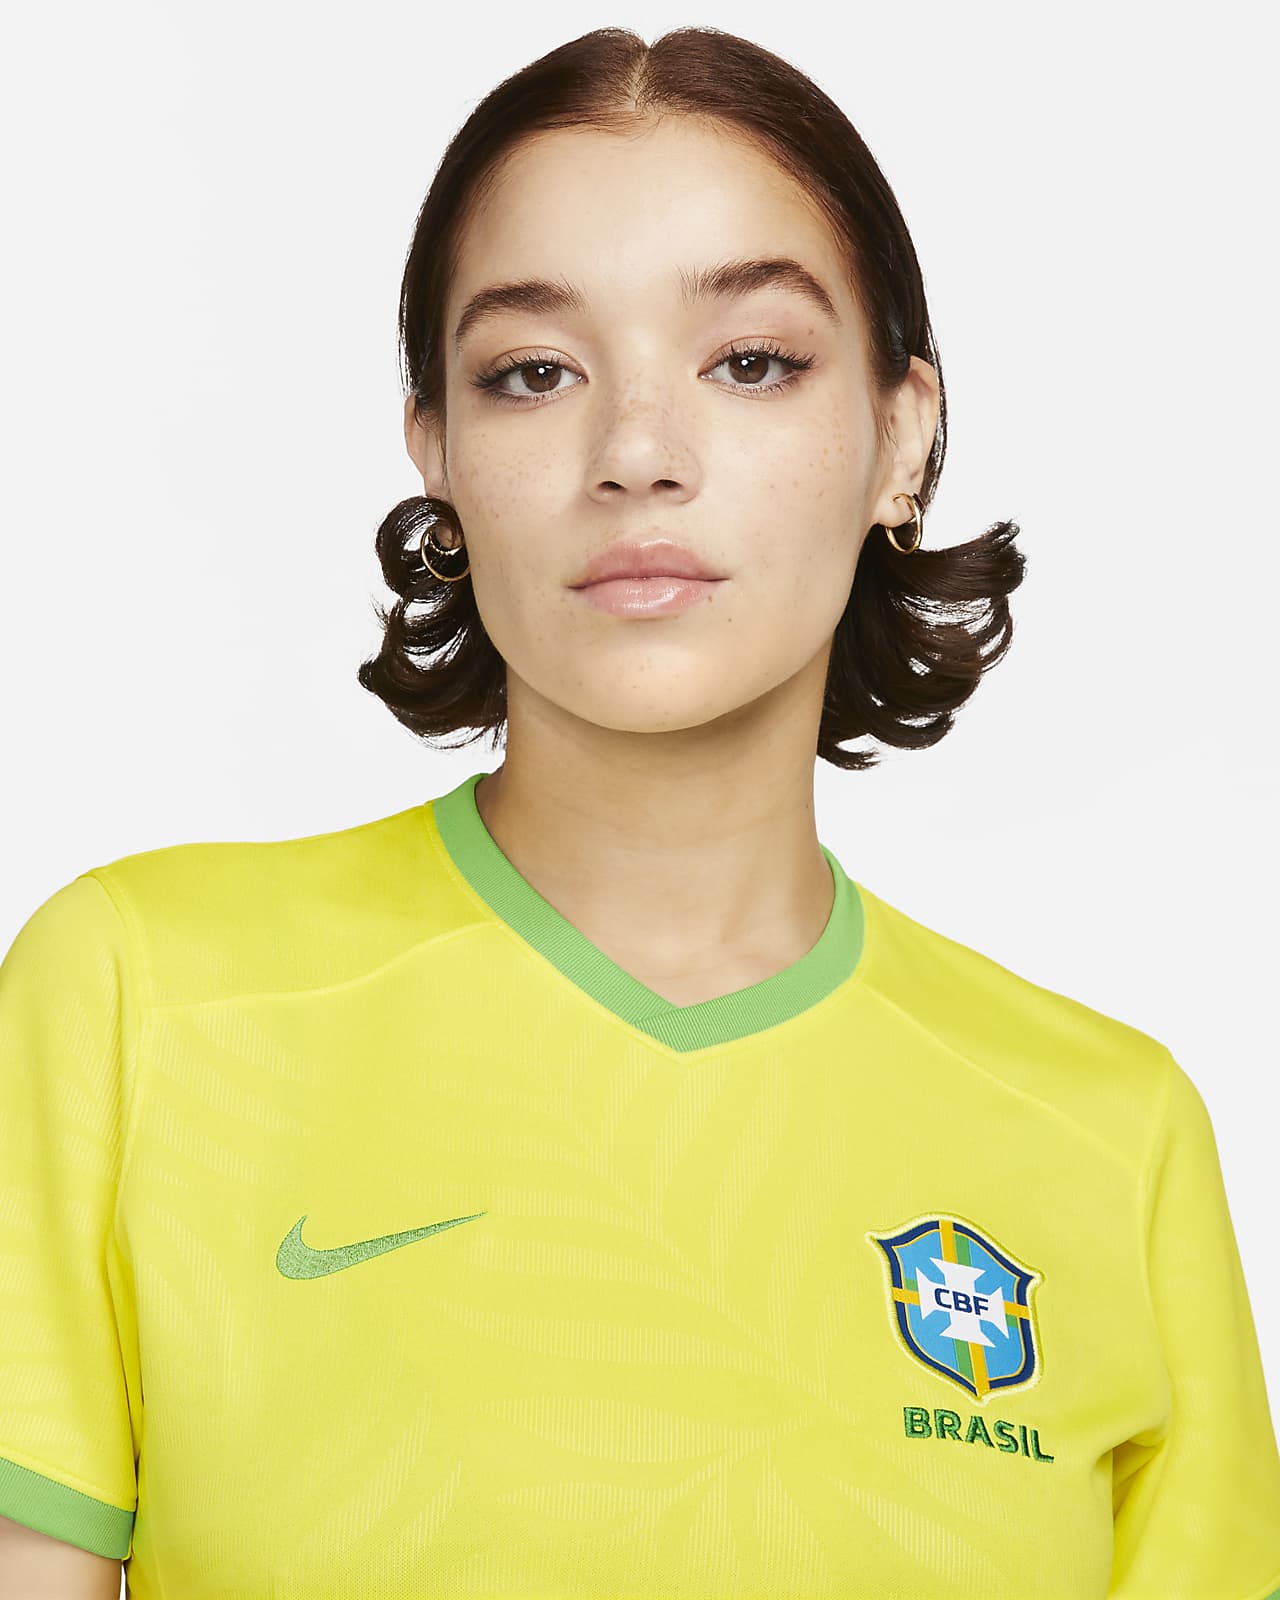 Maillot de foot Nike Dri-FIT Portugal 2023 Stadium Domicile pour femme.  Nike CH